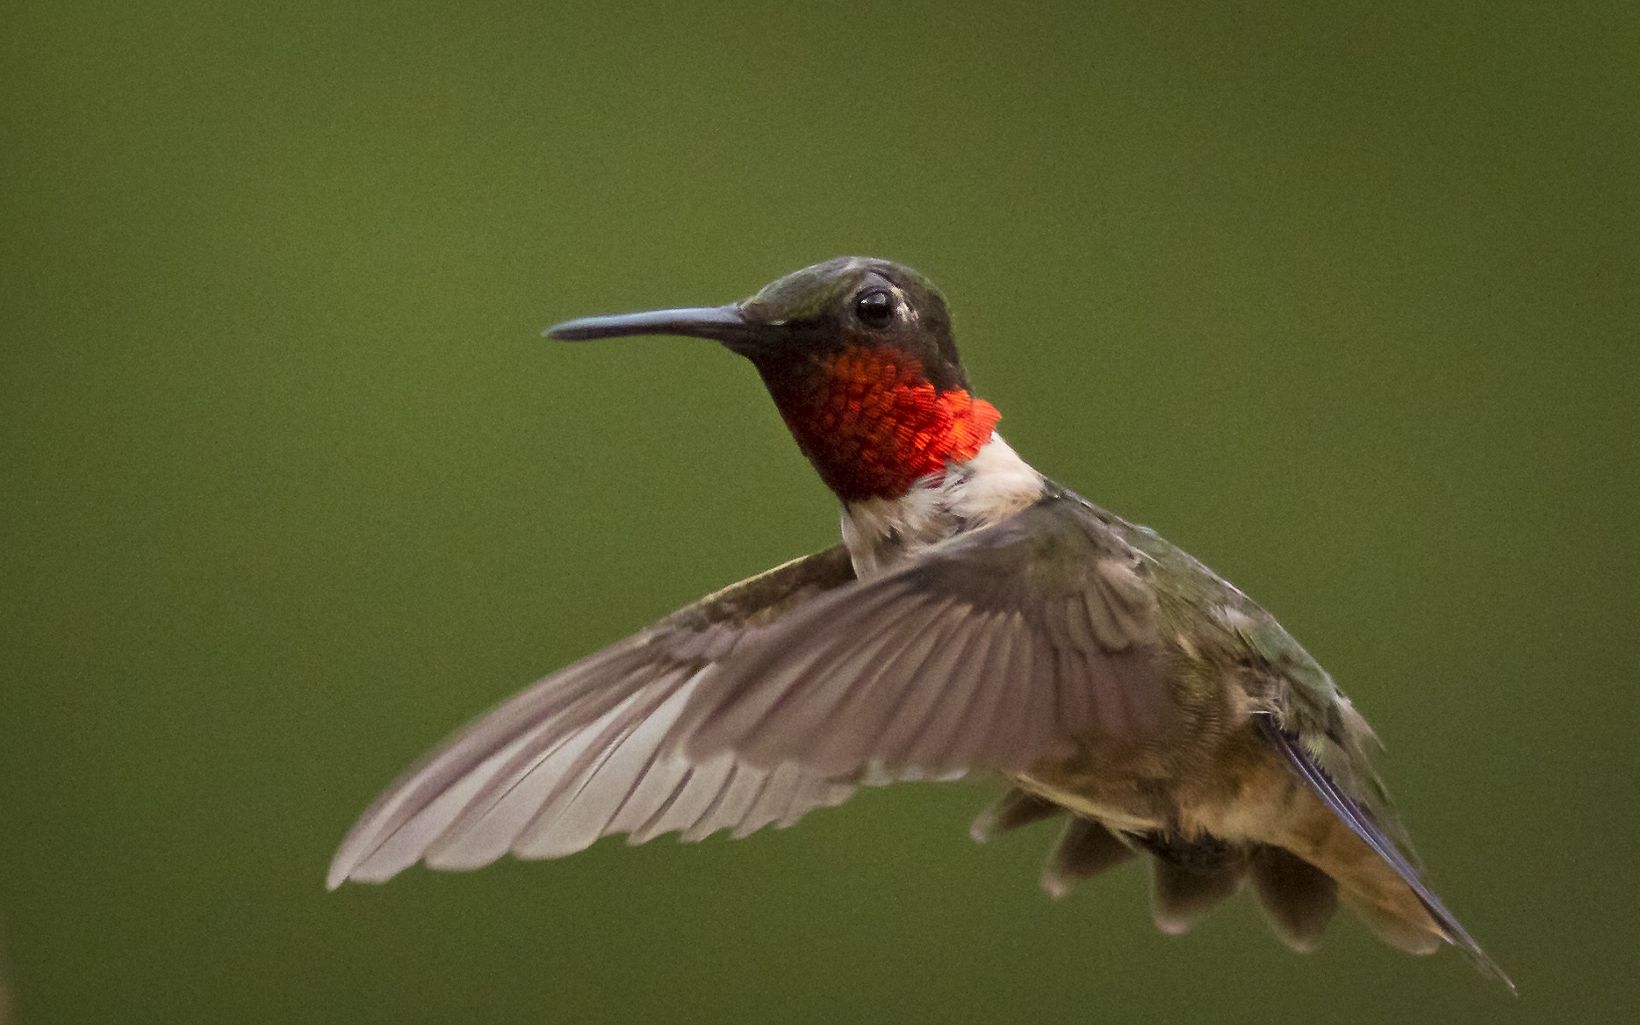 A small hummingbird in flight.